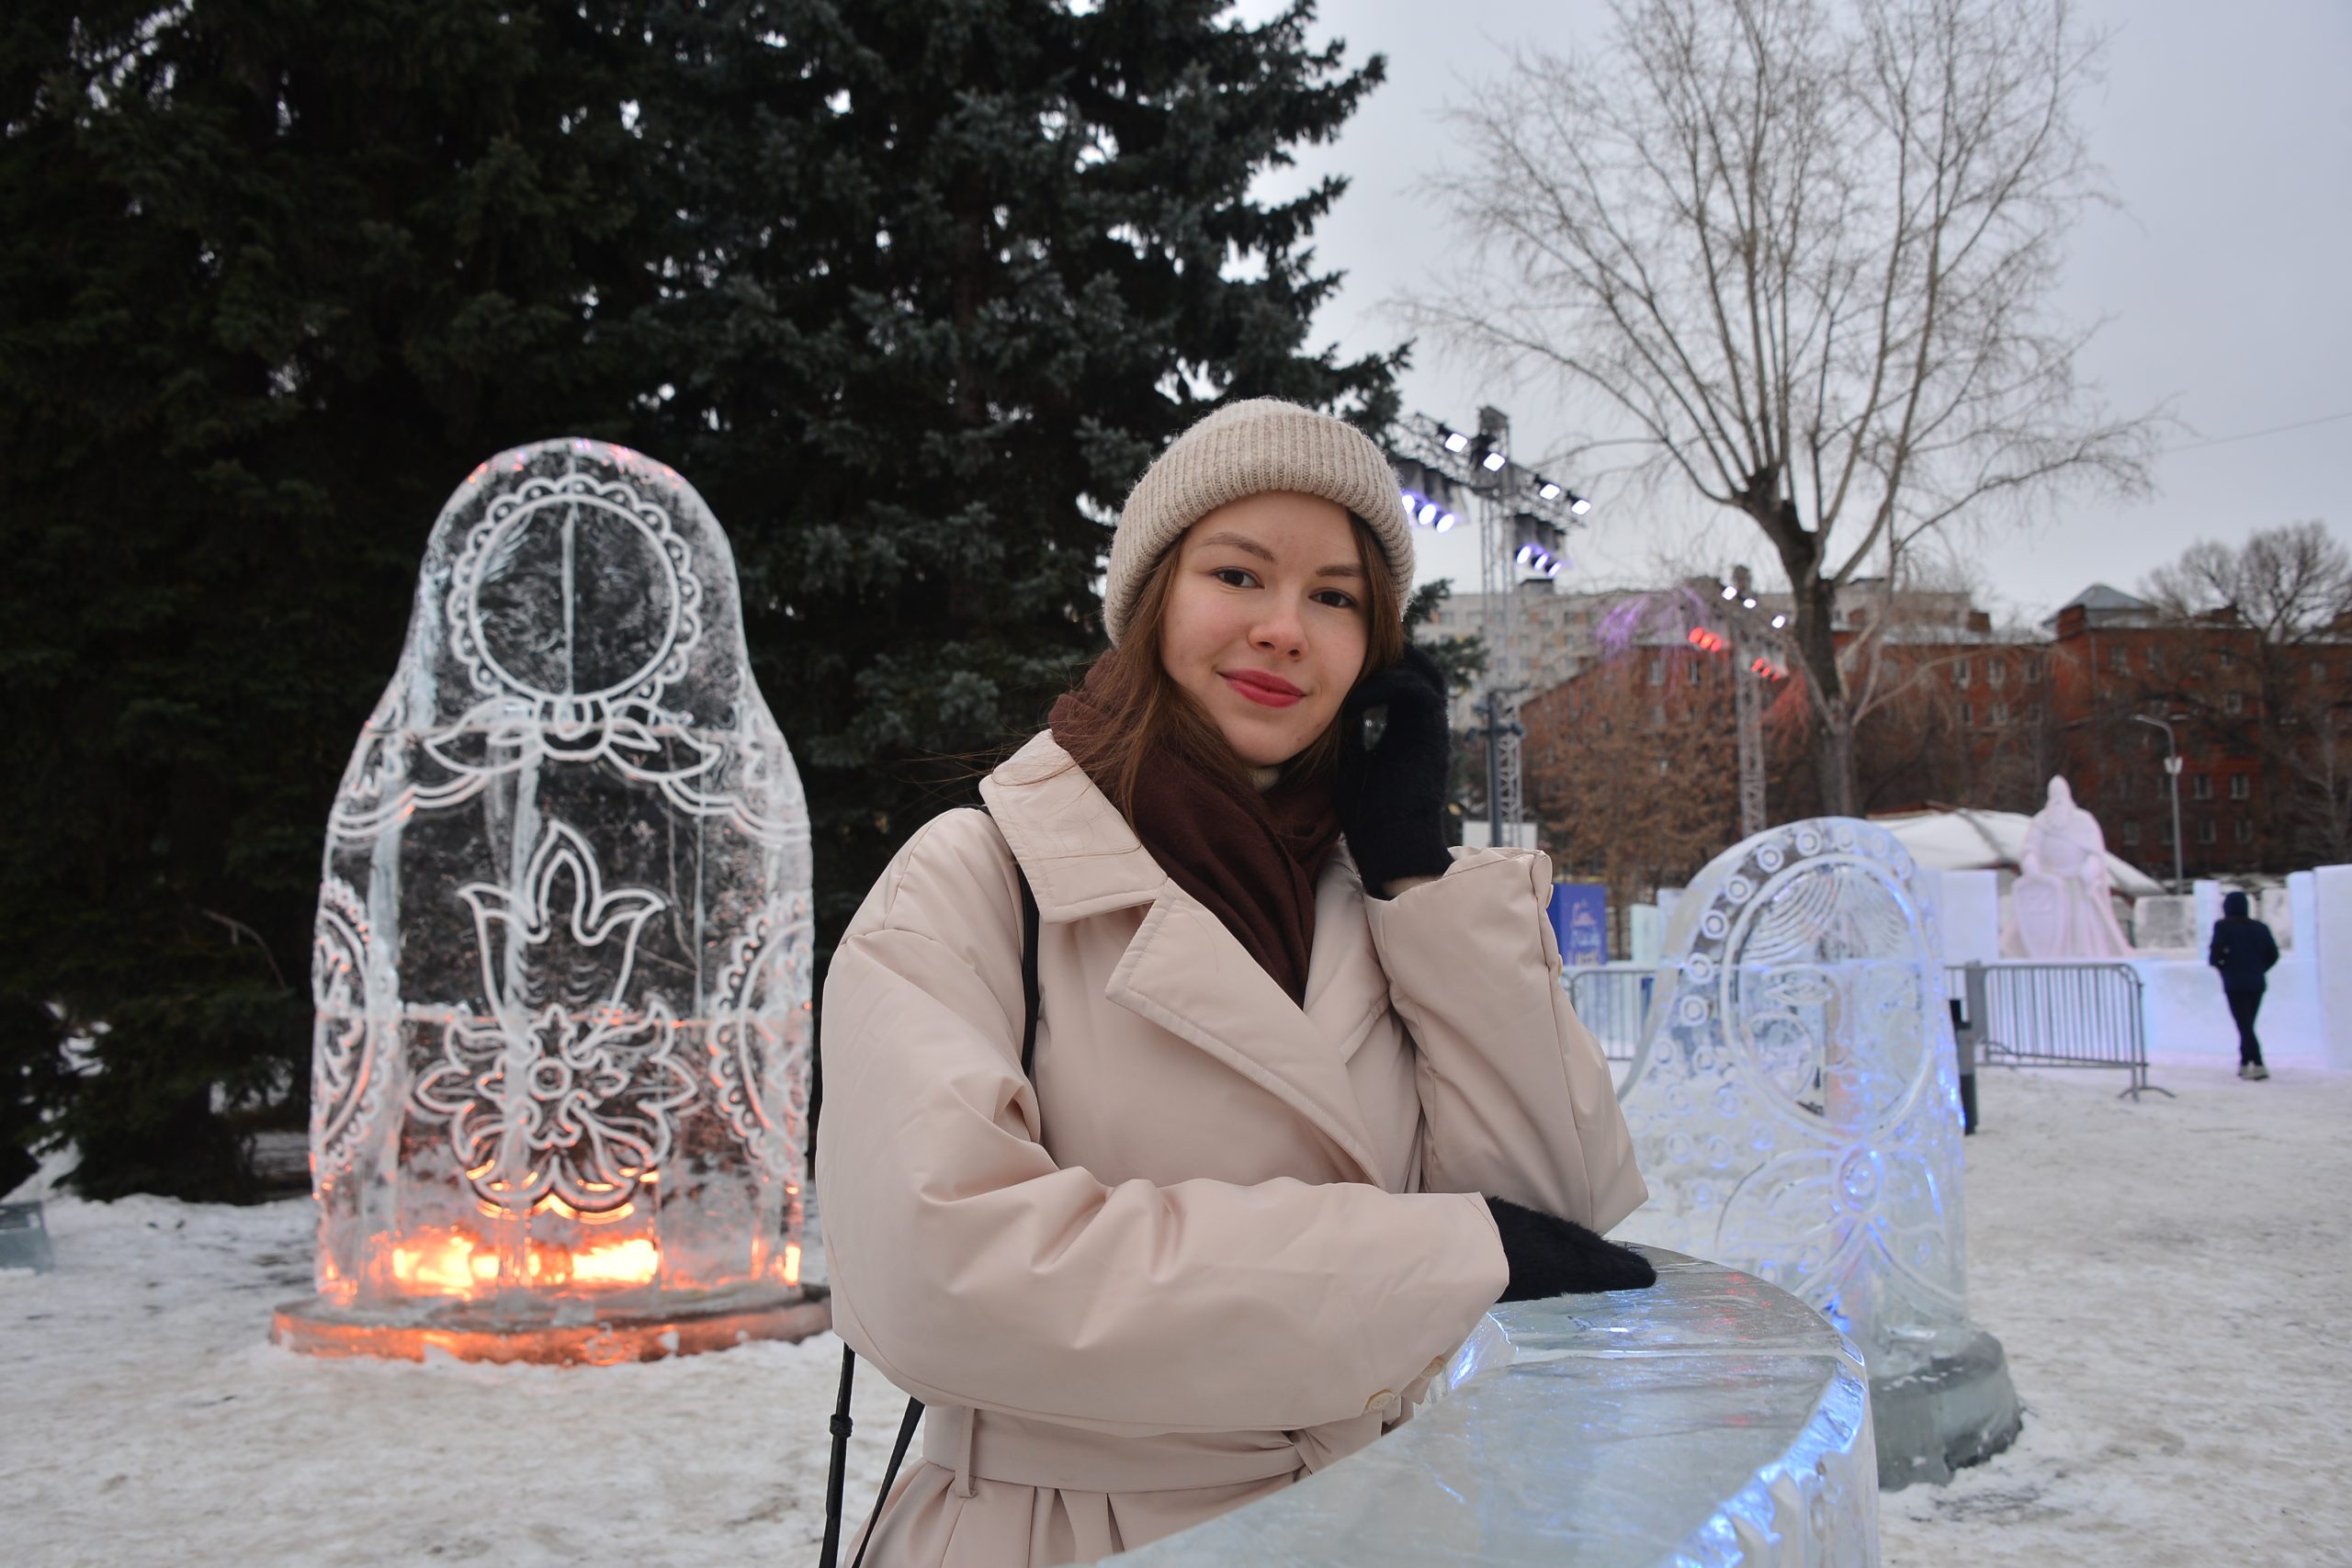 Ледяное королевство, или как проходит фестиваль «Снег и лед в Москве» в парке «Музеон». Фото: Анна Малакмадзе, «Вечерняя Москва»